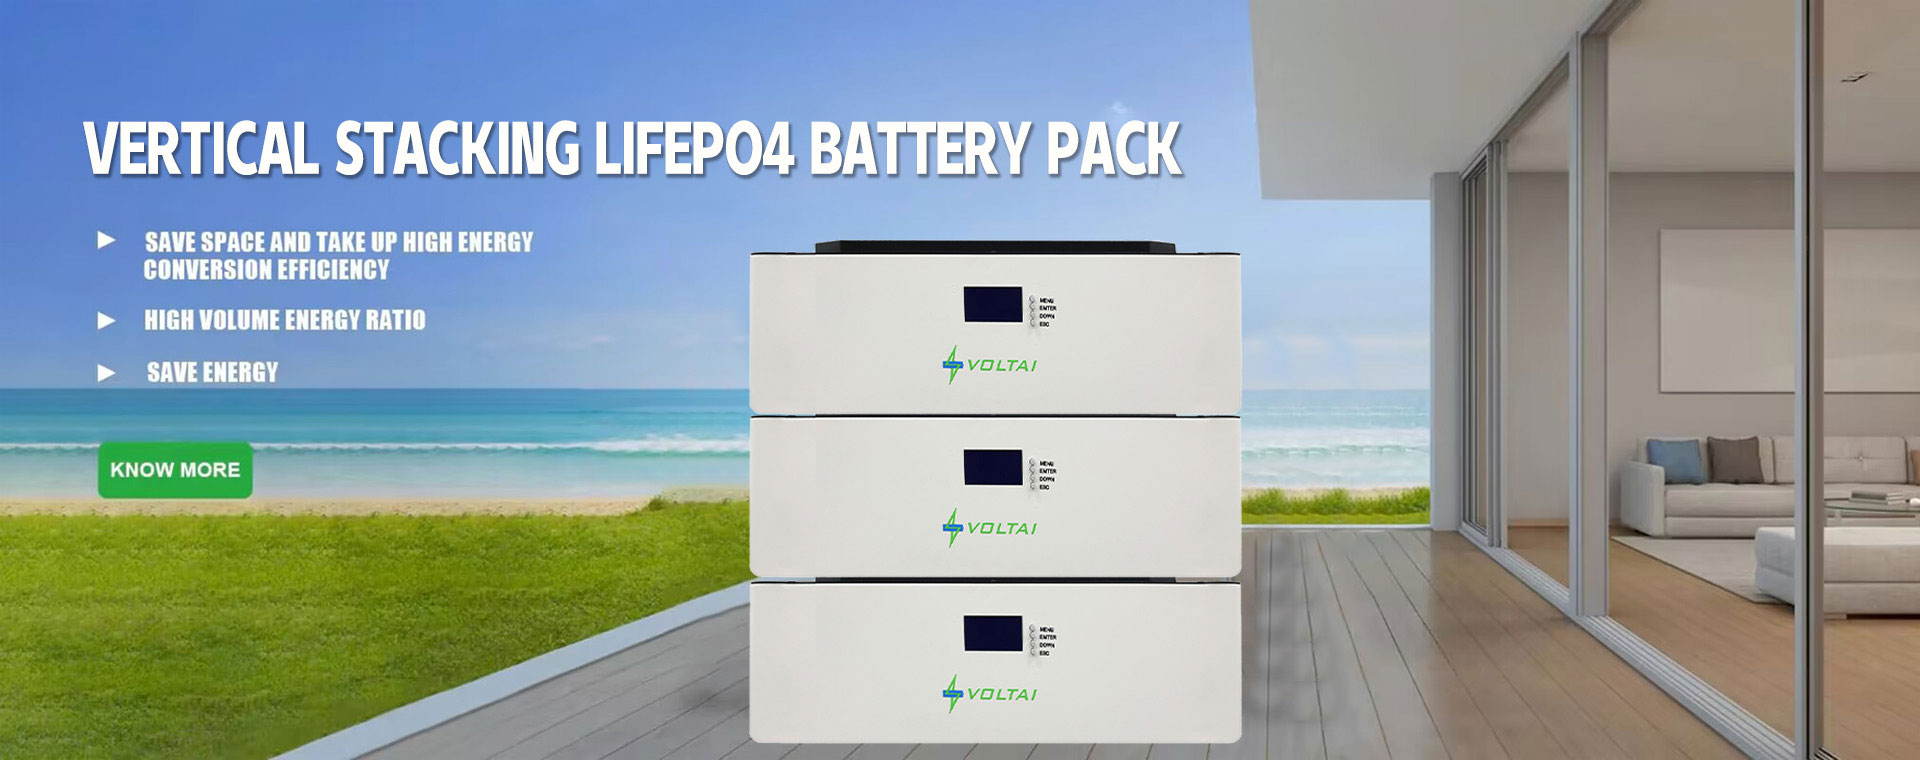 лифепо4 батерија која се може сложити